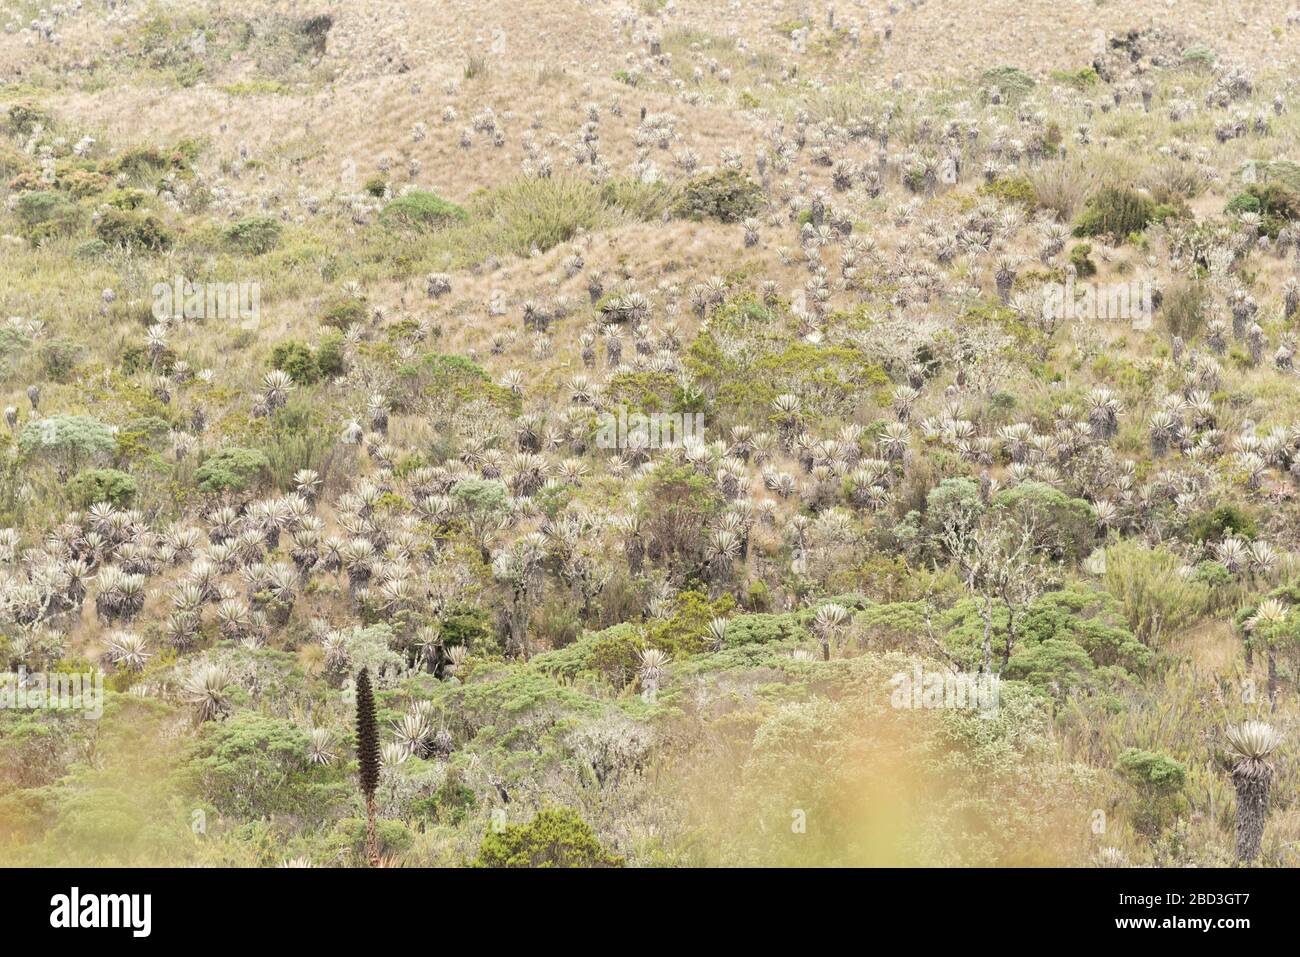 Parco Nazionale di Chingaza, Colombia. Paesaggio di Moor: Vegetazione tipica del paramo, compresi flailejones, espeletia e puya goudotiana Foto Stock